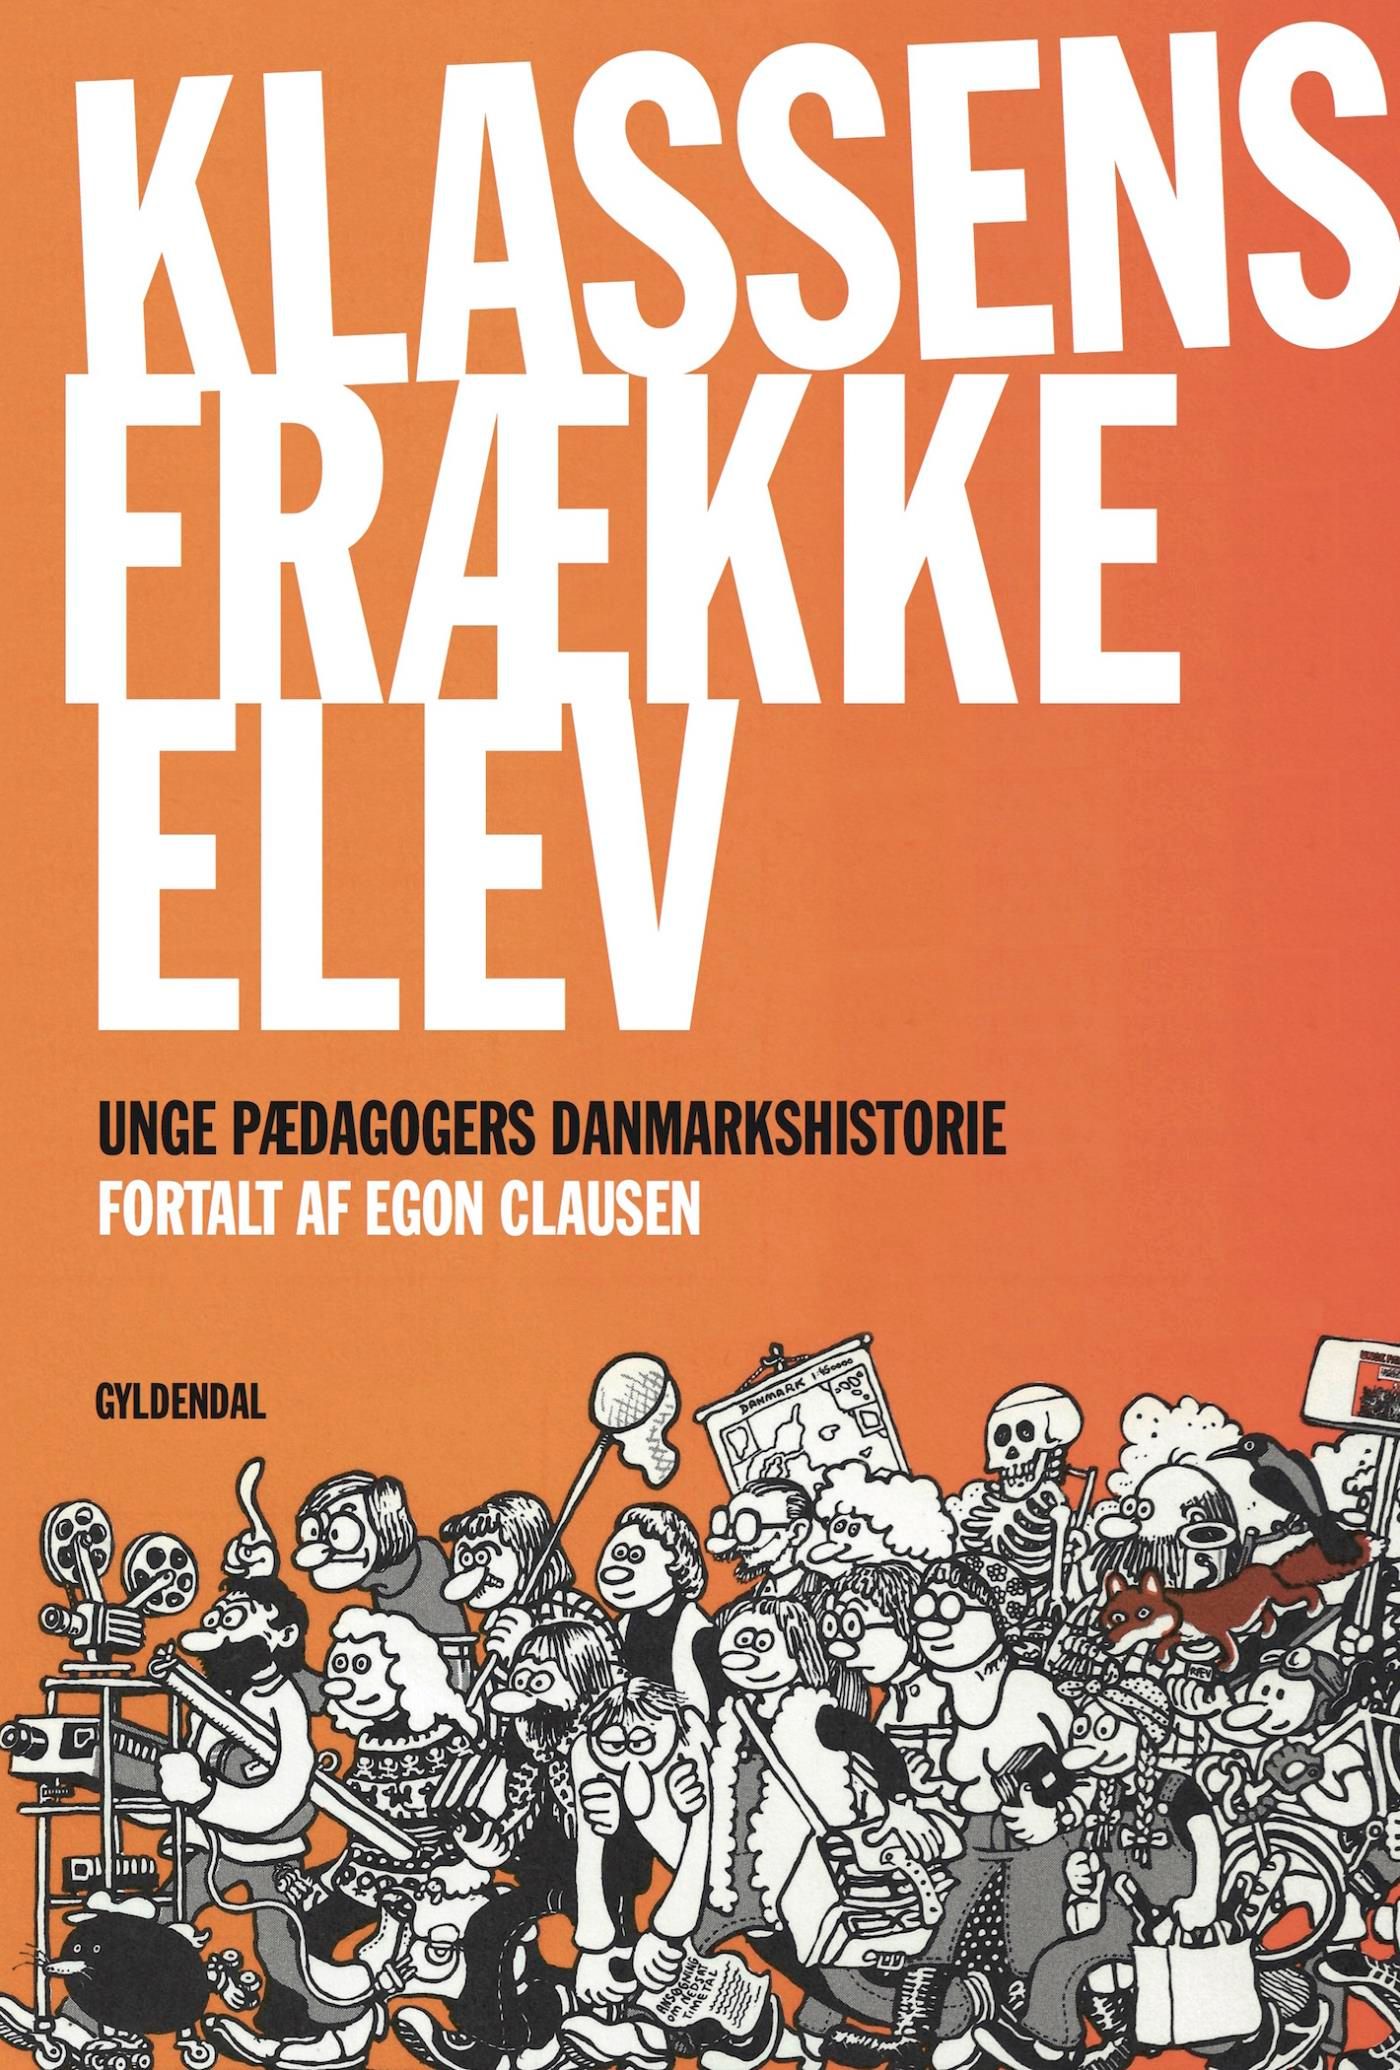 Klassens frække elev, eBook by Egon Clausen